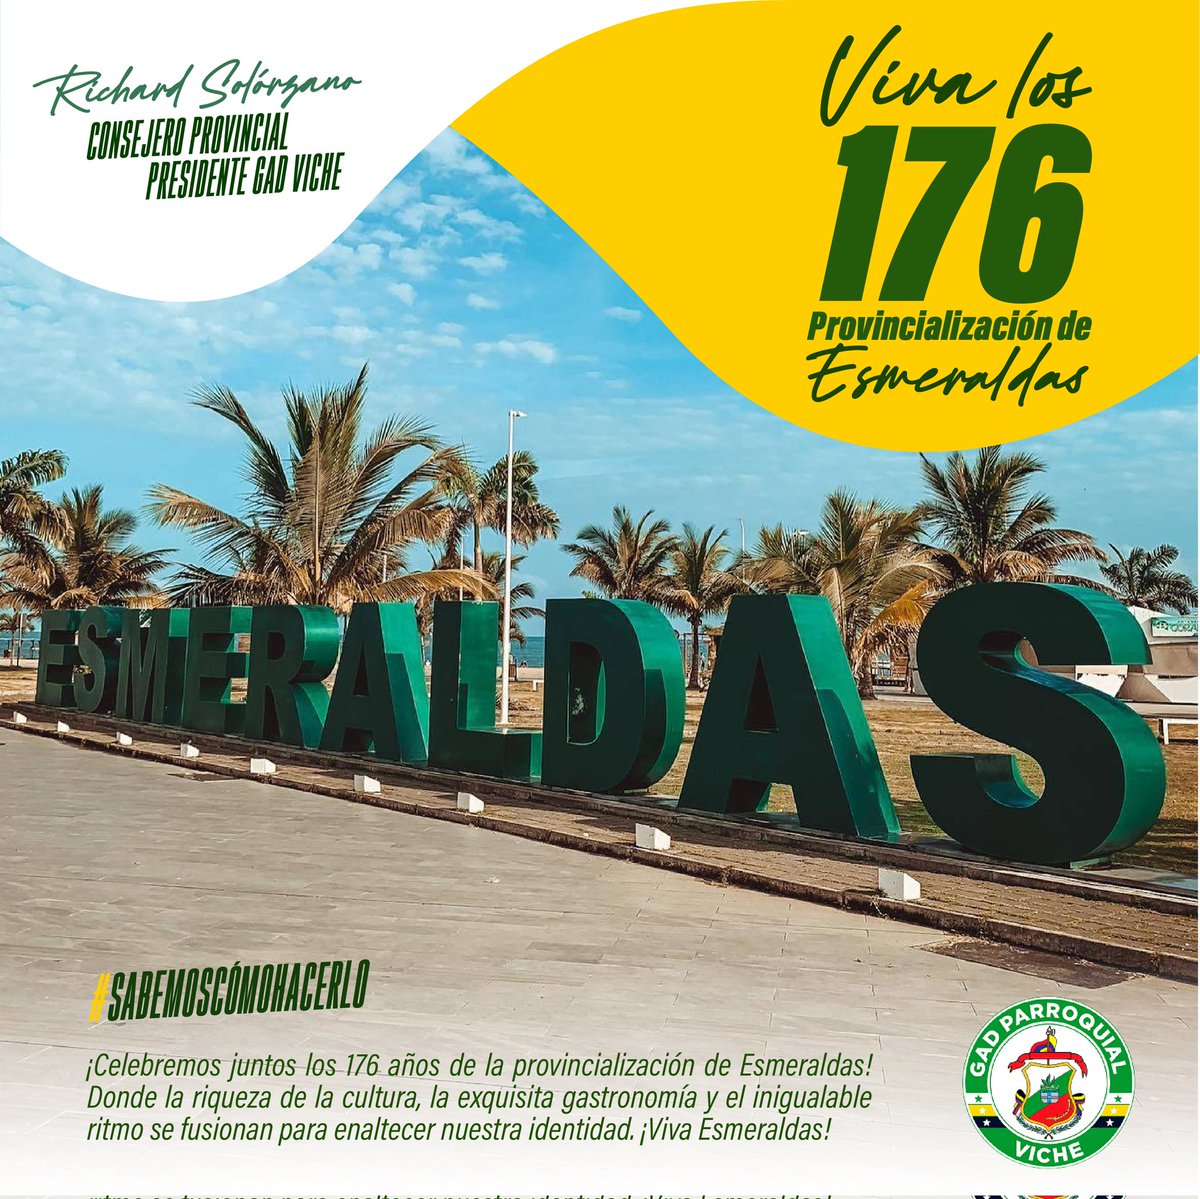 Celebramos con orgullo estos 176 años de fundación de nuestra tierra  verde.

Loor a Esmeraldas.
#YoSoyViche
#SabemosComoHacerlo
#GadPrVueltaLarga